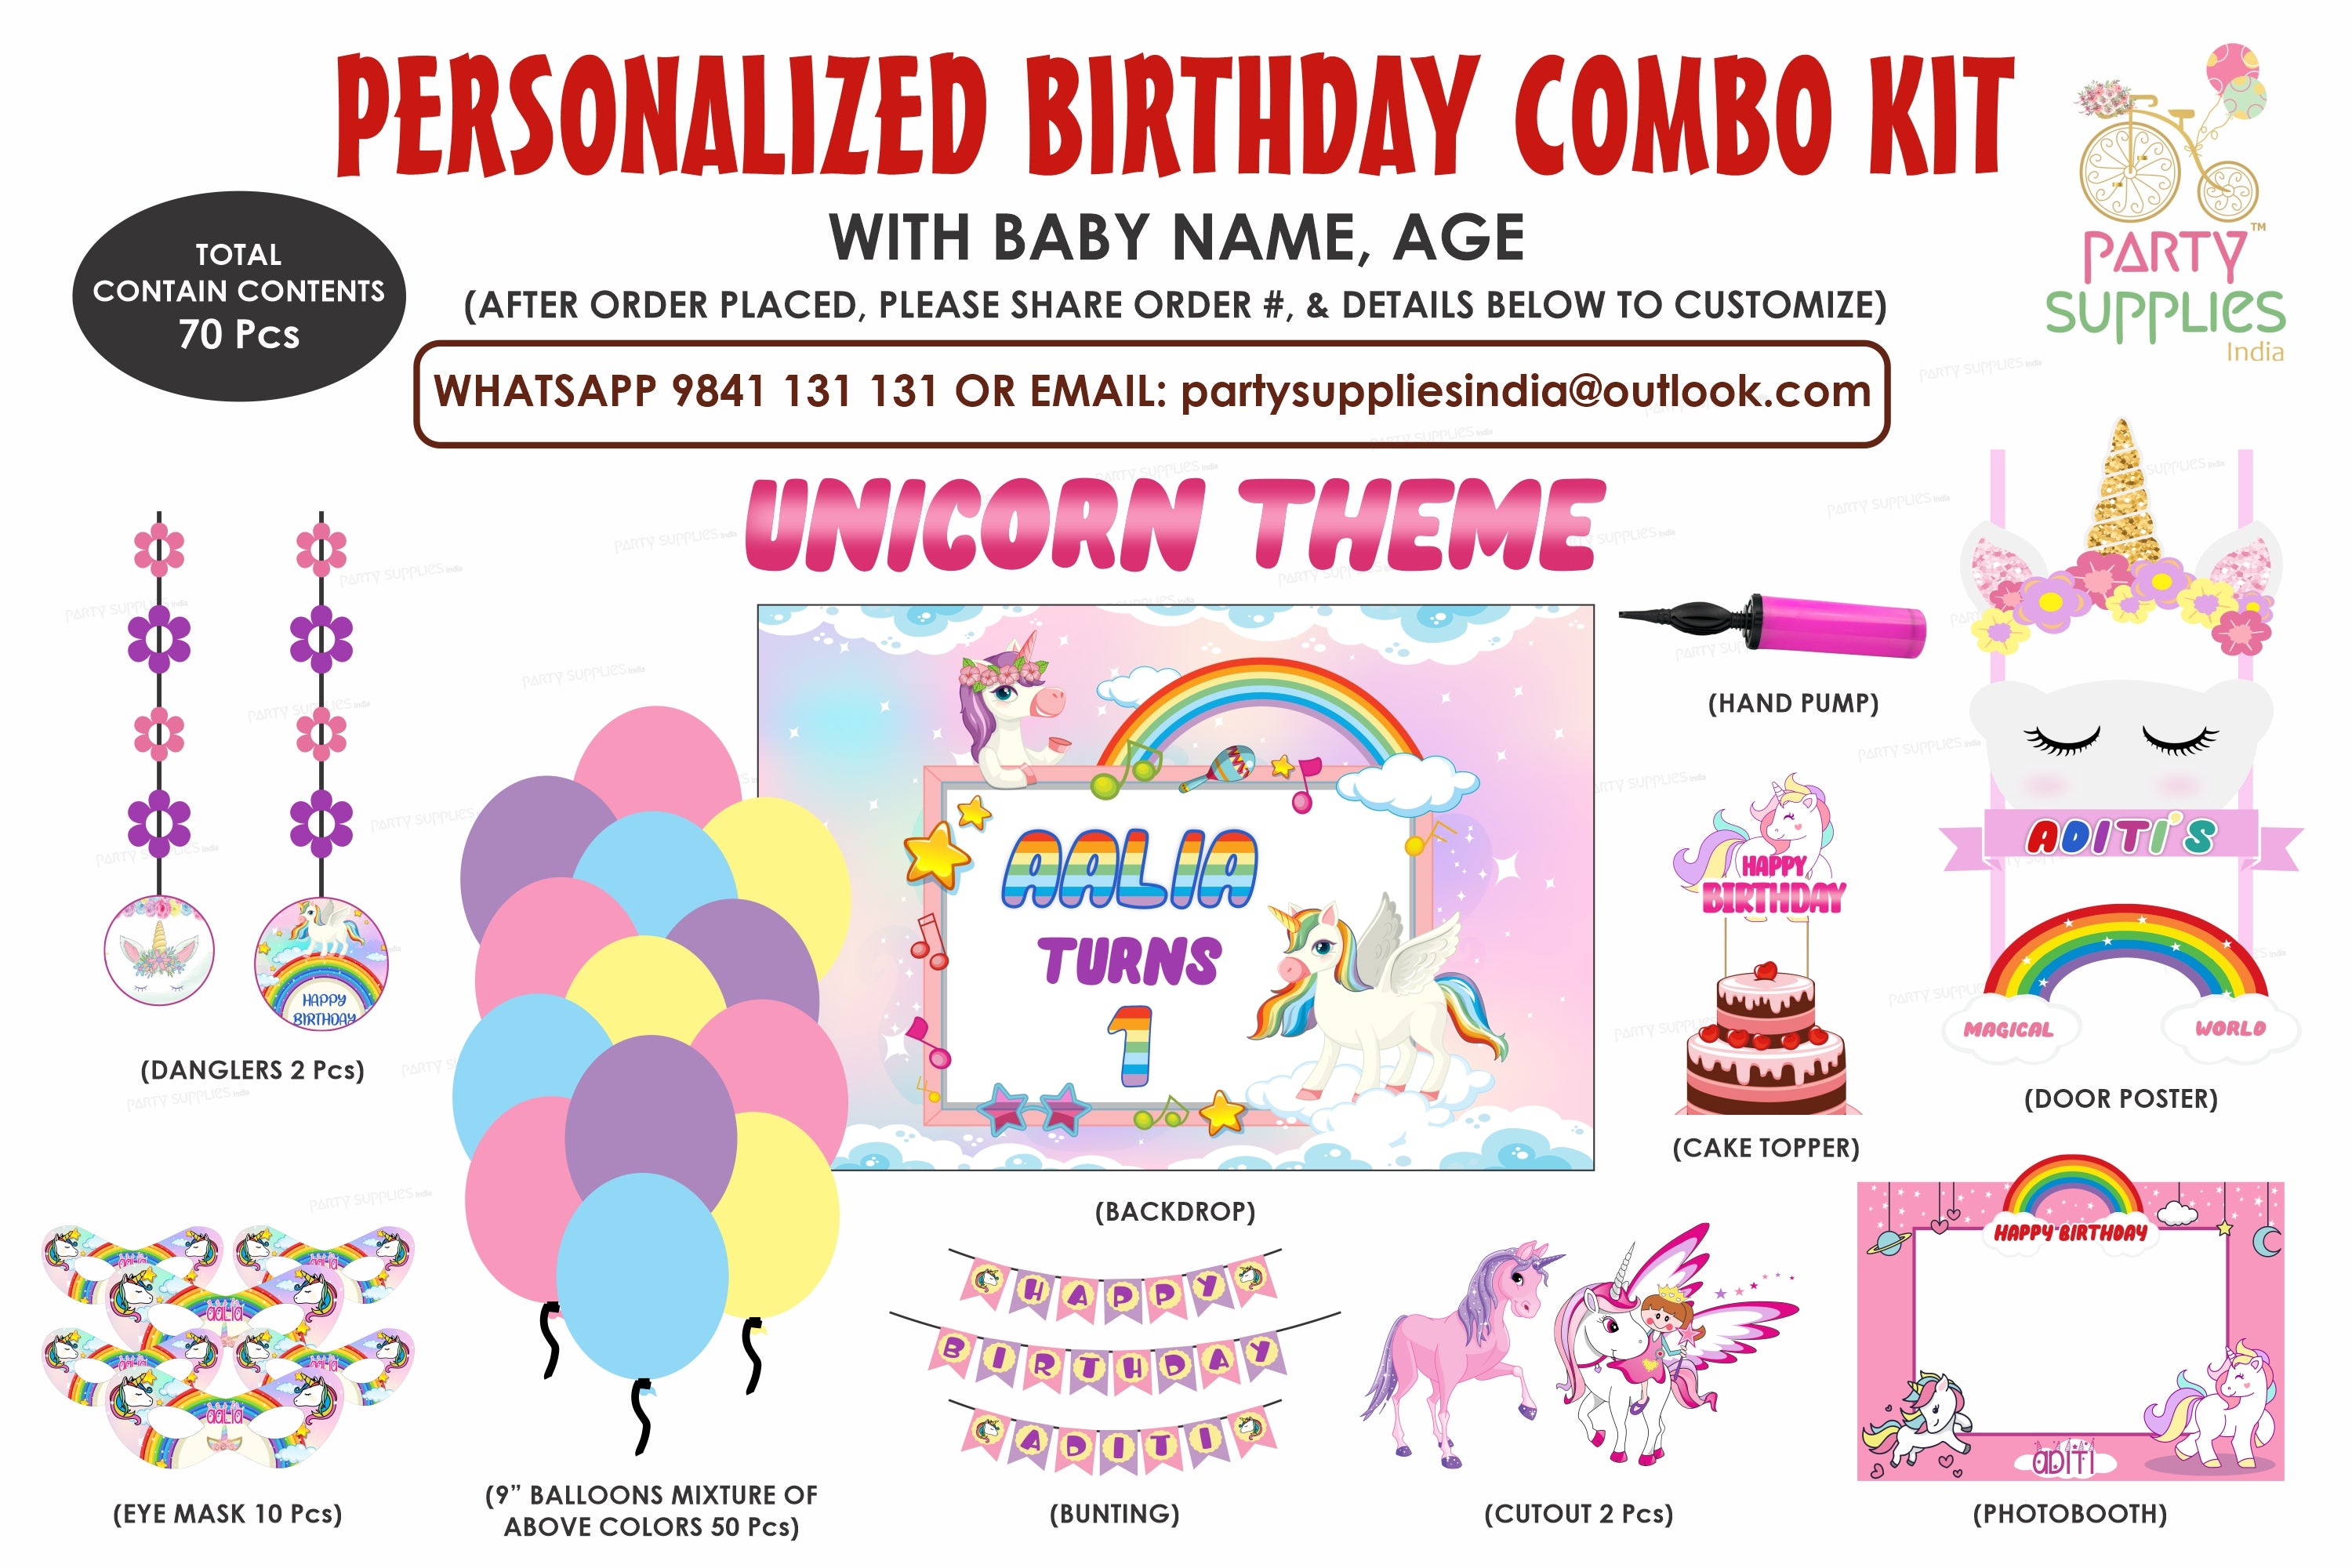 PSI Unicorn Theme Exclusive Kit